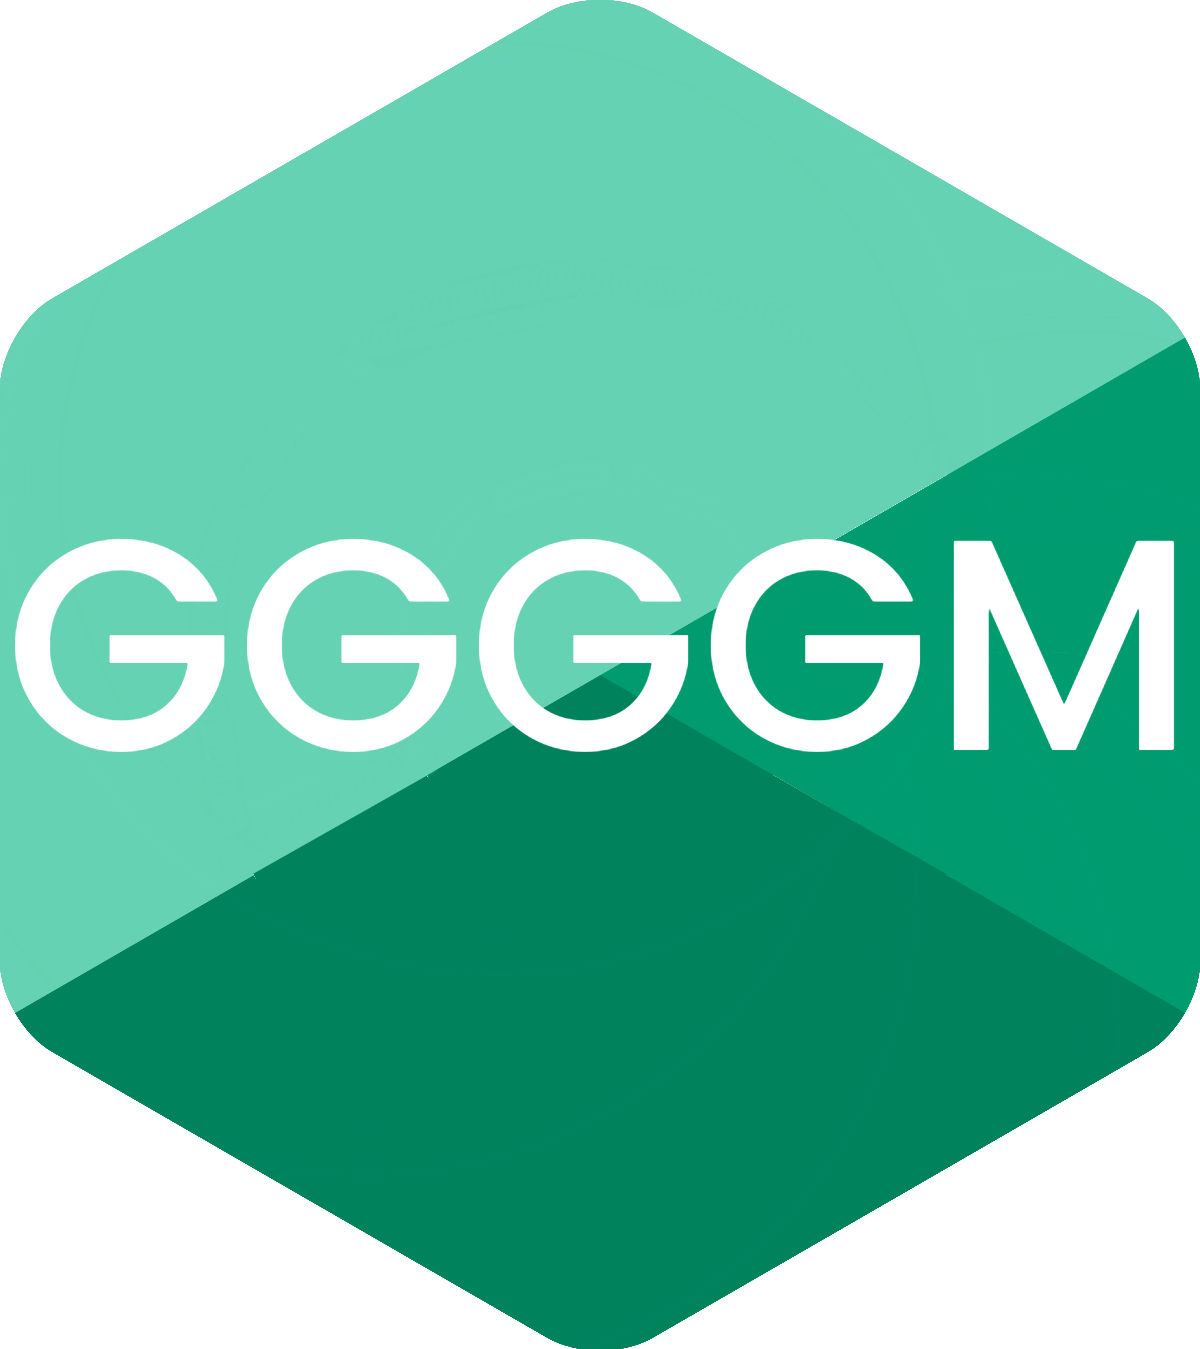 GGGGM Syntax Highlighting for VSCode